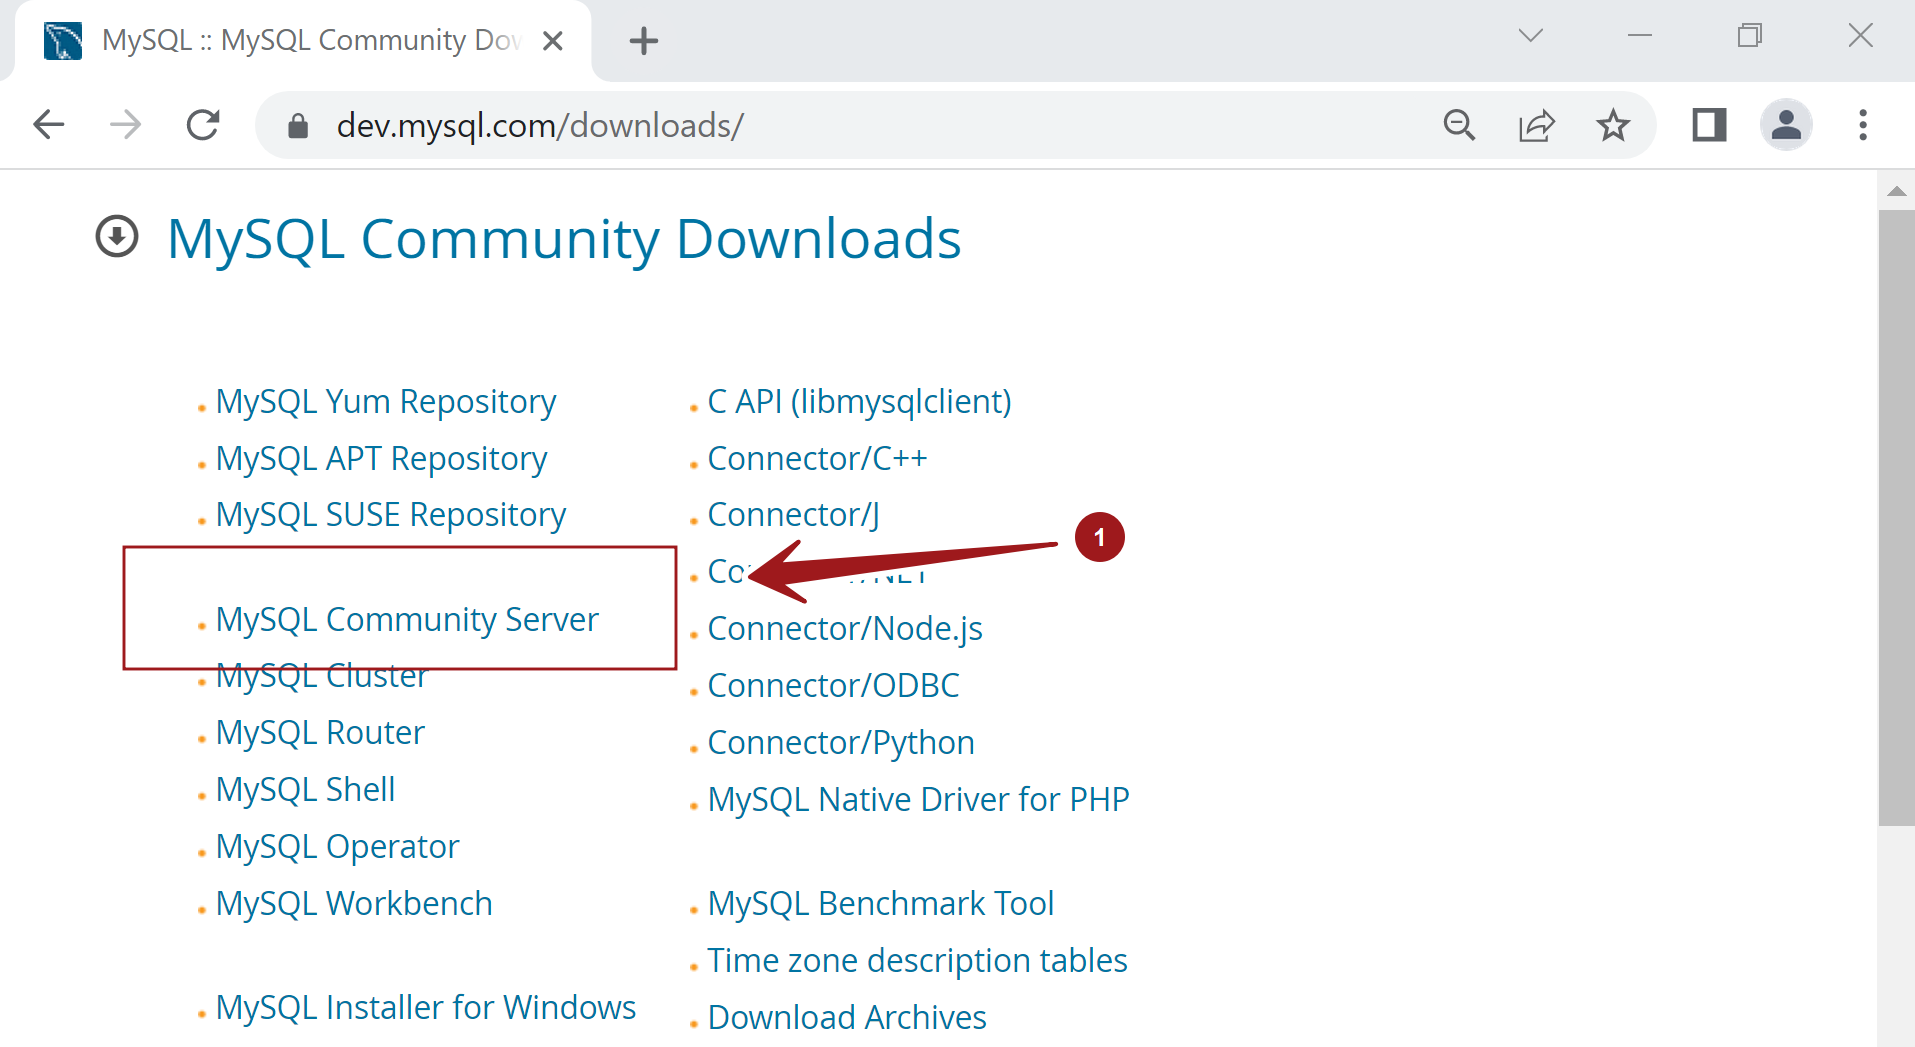 MySQL Community Downloads TDocs